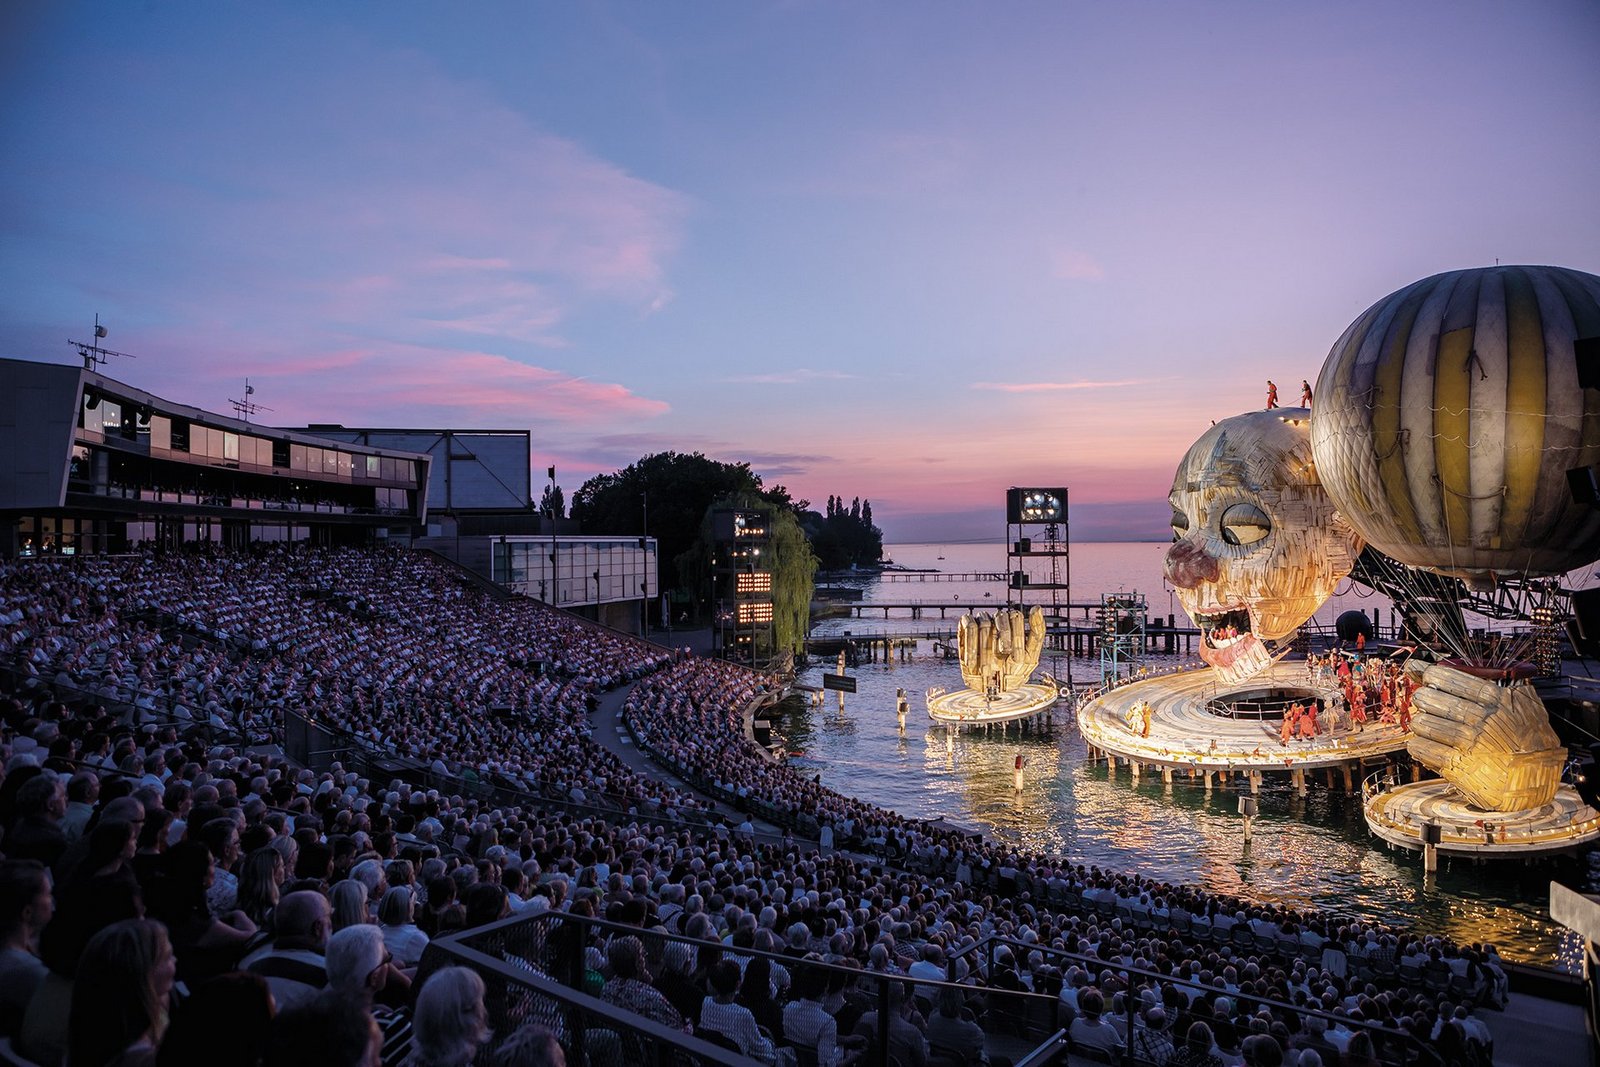 Bühnenbild während der Aufführung Rigoletto 2019 in Bregenz